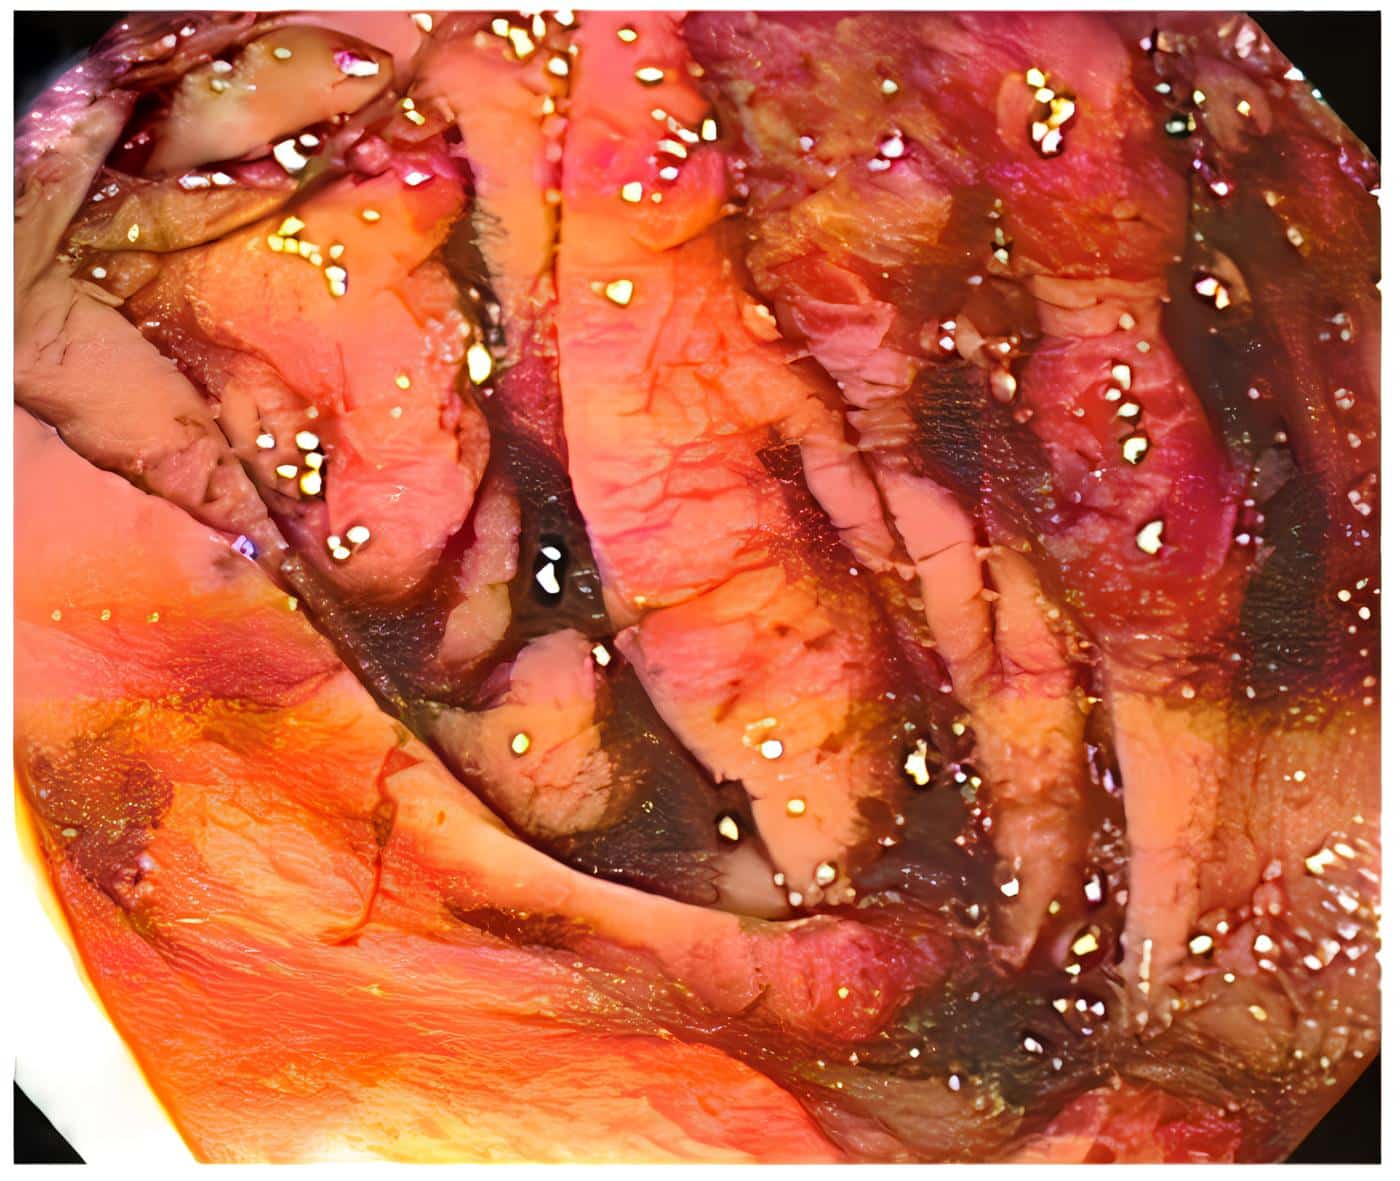 Lesiones por angiosarcoma en colon con sangrado reciente que obstruye la correcta visualización